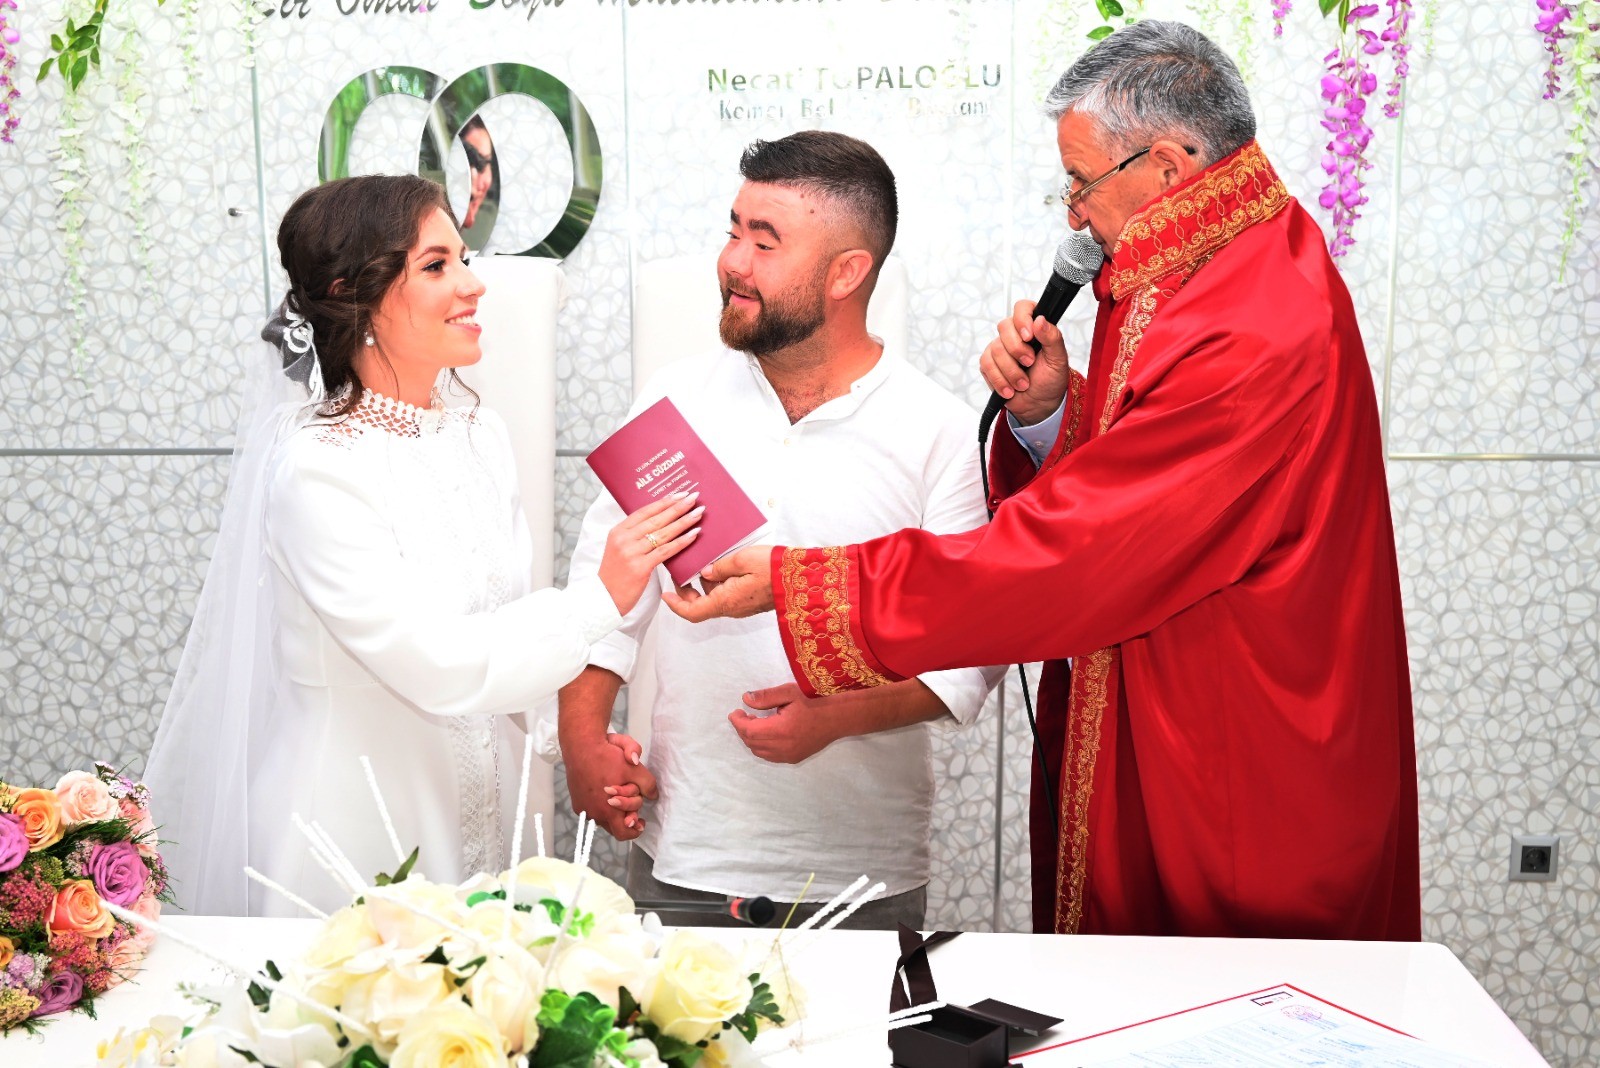 来自俄乌战争两国的一对情侣在土耳其举行婚礼